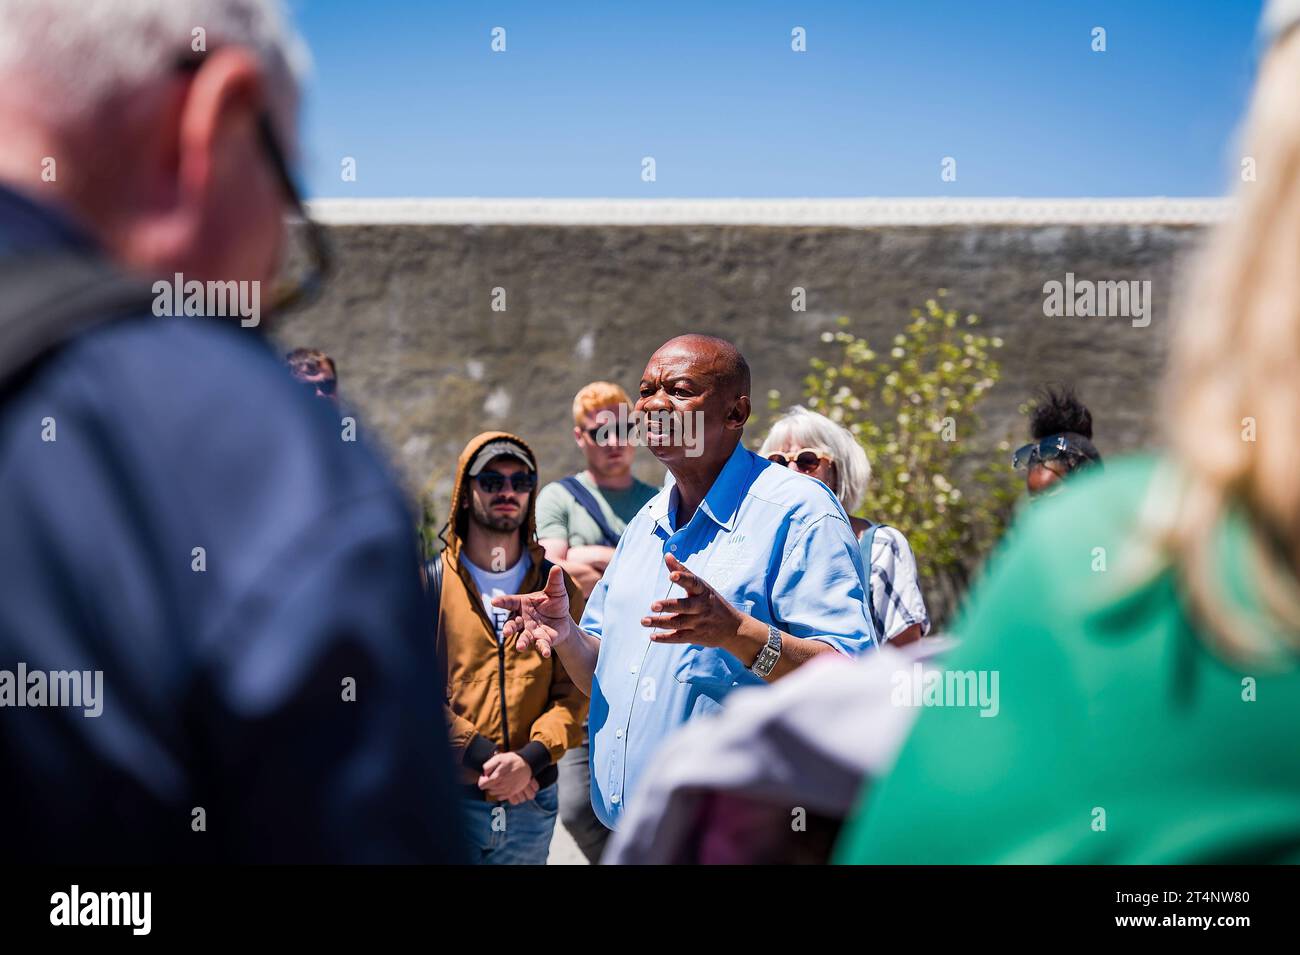 29.10.2023, xovx, Politik, Reise. Robben Island - Gefängnisinsel vor Kapstadt Führung einer Besuchergruppe durch Nelson Mandelas im Gefängnishof des Zellenblocks des Hochsicherheitstrakts auf der Gefängnisinsel Robben Island vor der Küste von Kapstadt, durch einen ehemaligen politischen Gefangenen, der der in diesem Gefängnis über viele Jahre inhaftiert wurde. In diesem Teil des Hochsicherheitstrakts verbrachte Nelson Mandela über 18 Jahre seiner Gefangenschaft in Einzelhaft. Der spätere Präsident Südafrikas Nelson Mandela verbrachte hier von 1964 bis 1982 seiner insgesamt 27-jährigen Gefangen Stock Photo